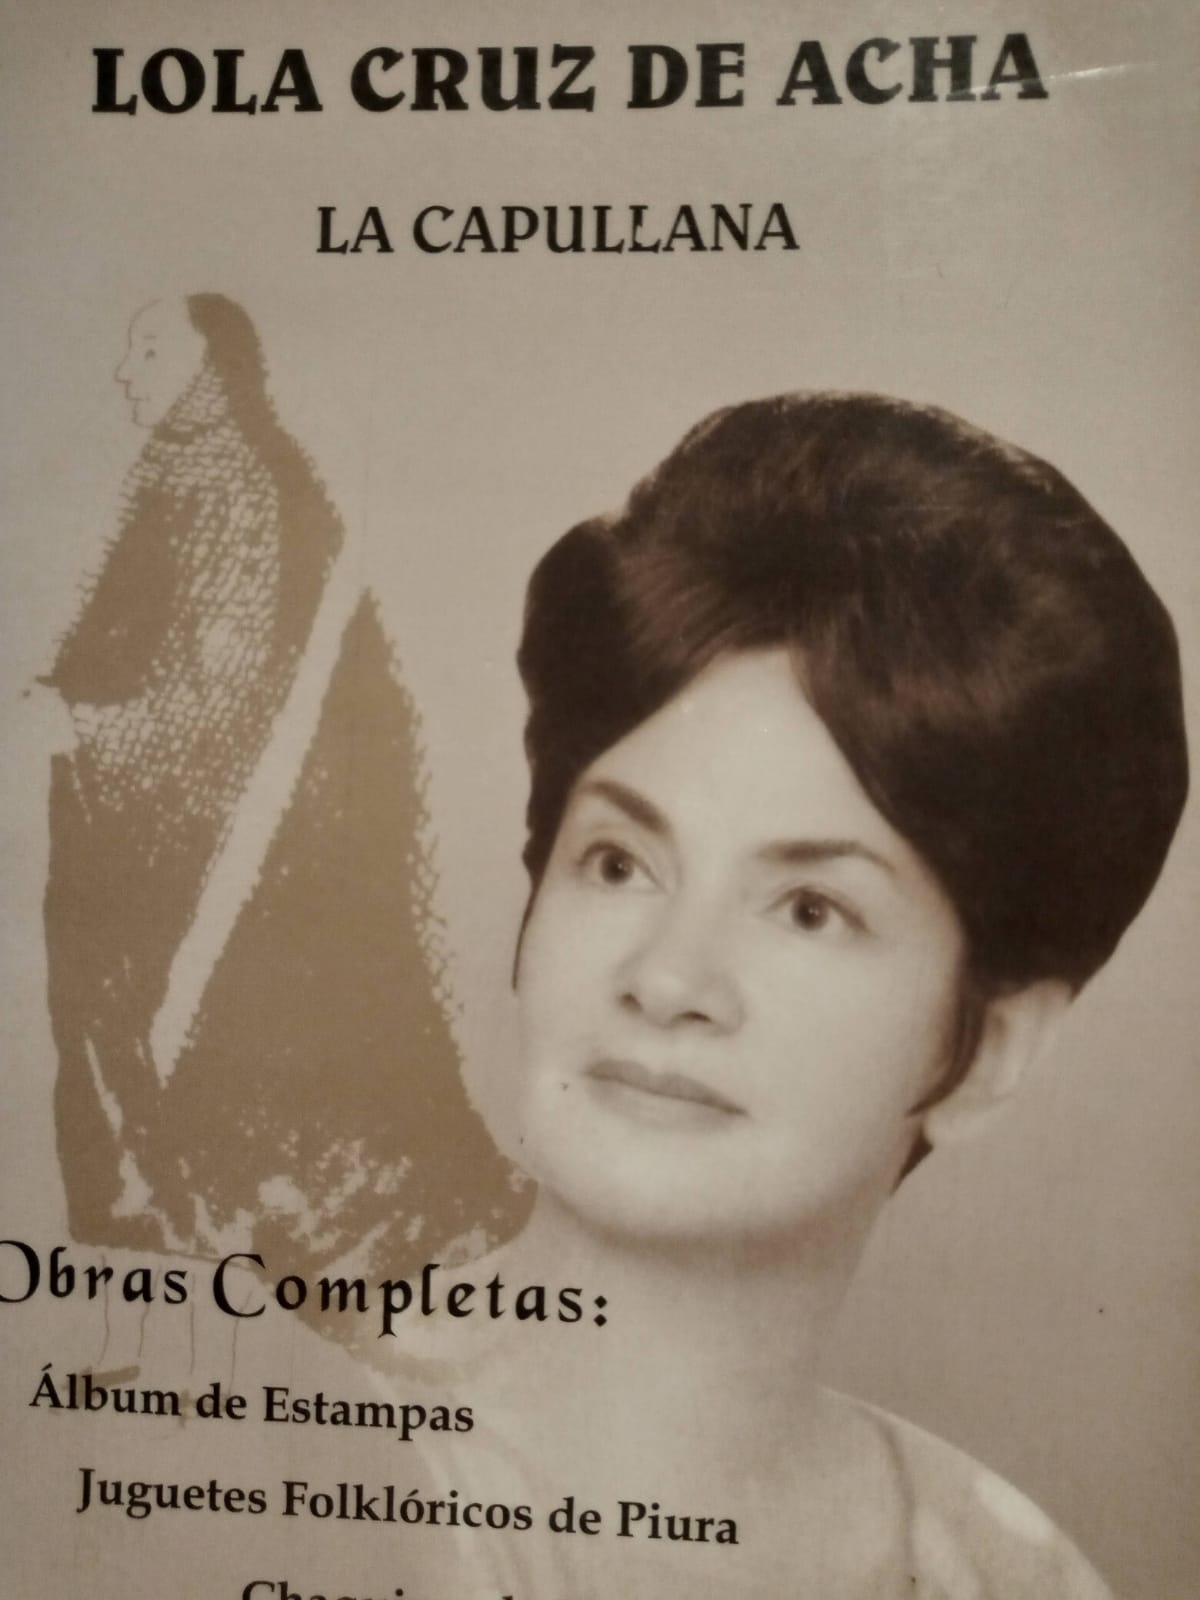 Poetisa Lola Cruz de Acha